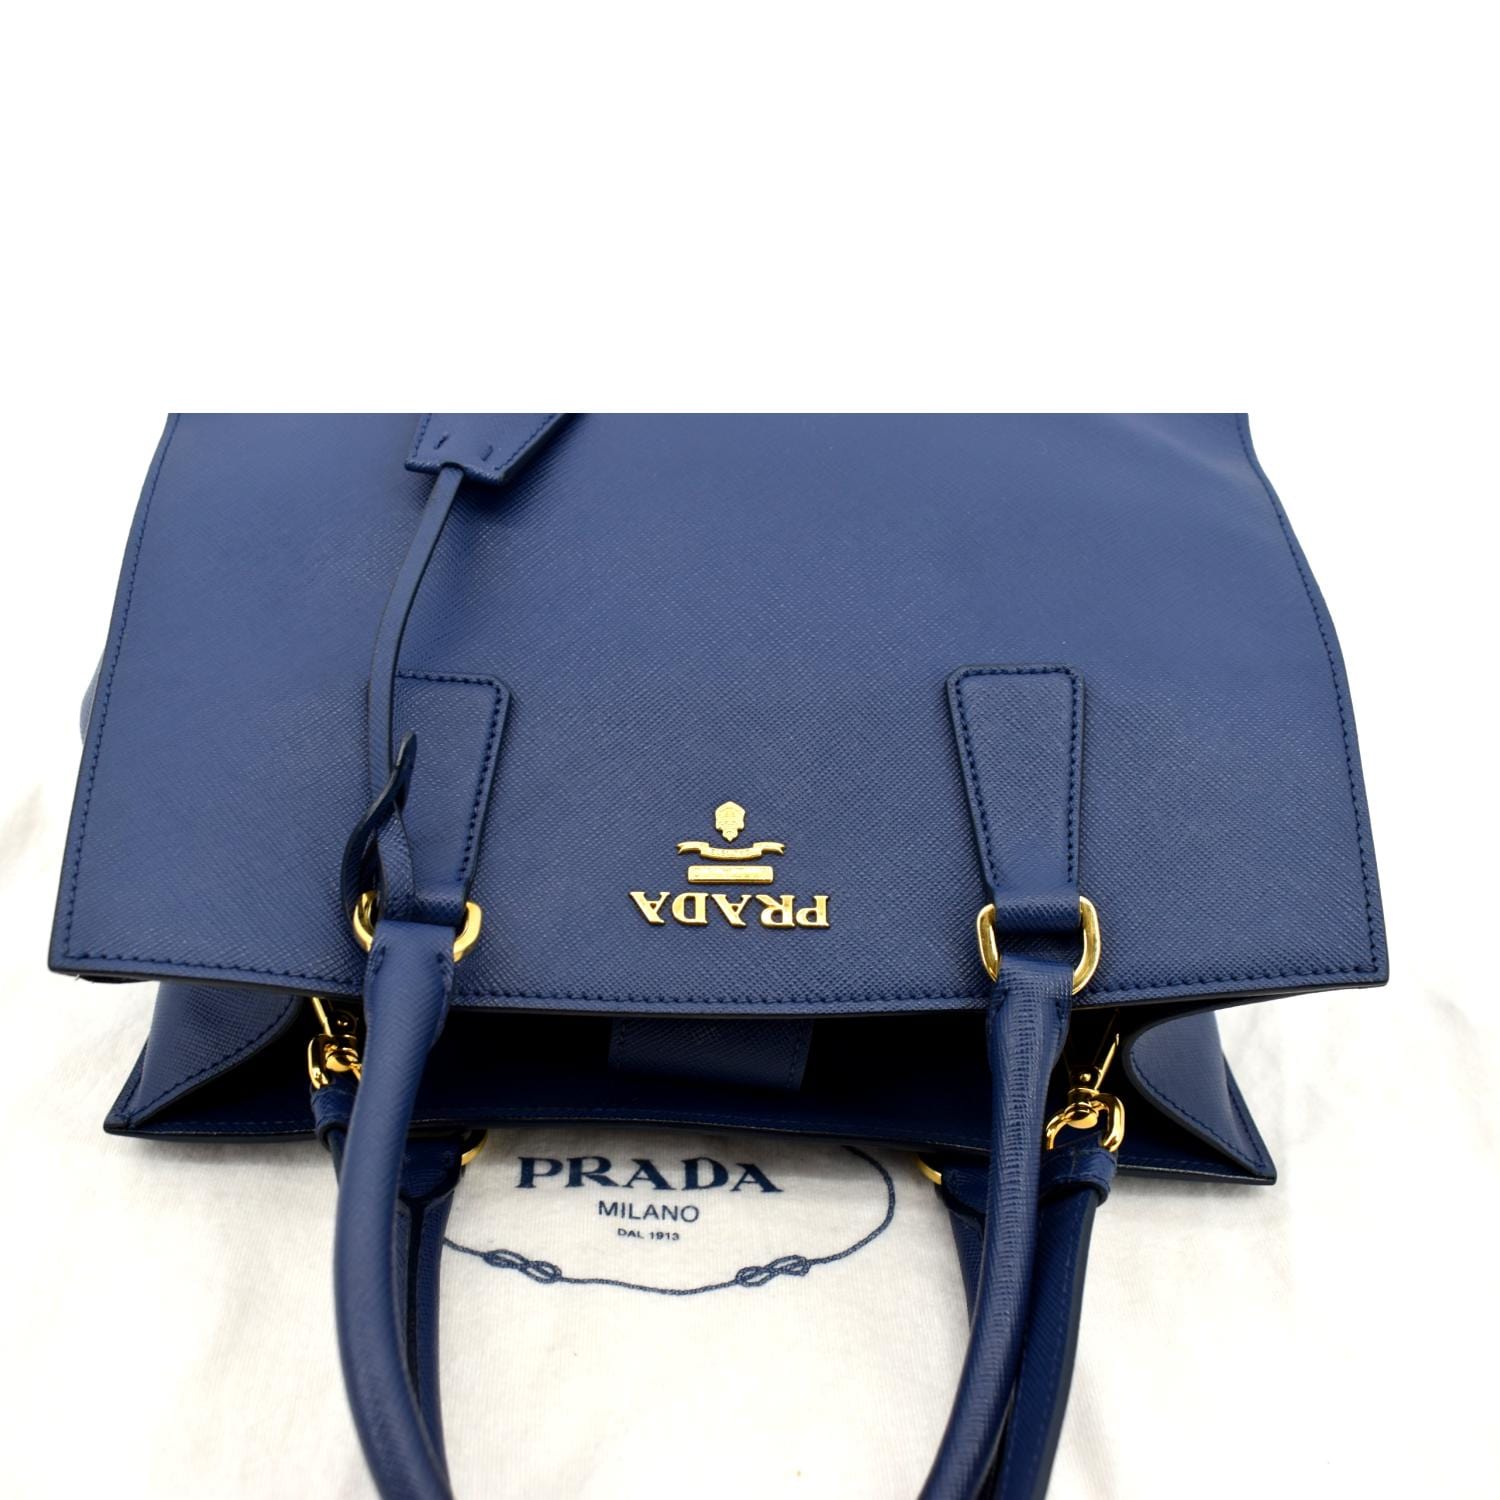 PRADA GALLERIA Classic Large Prada Galleria Saffiano leather bag 1BA274